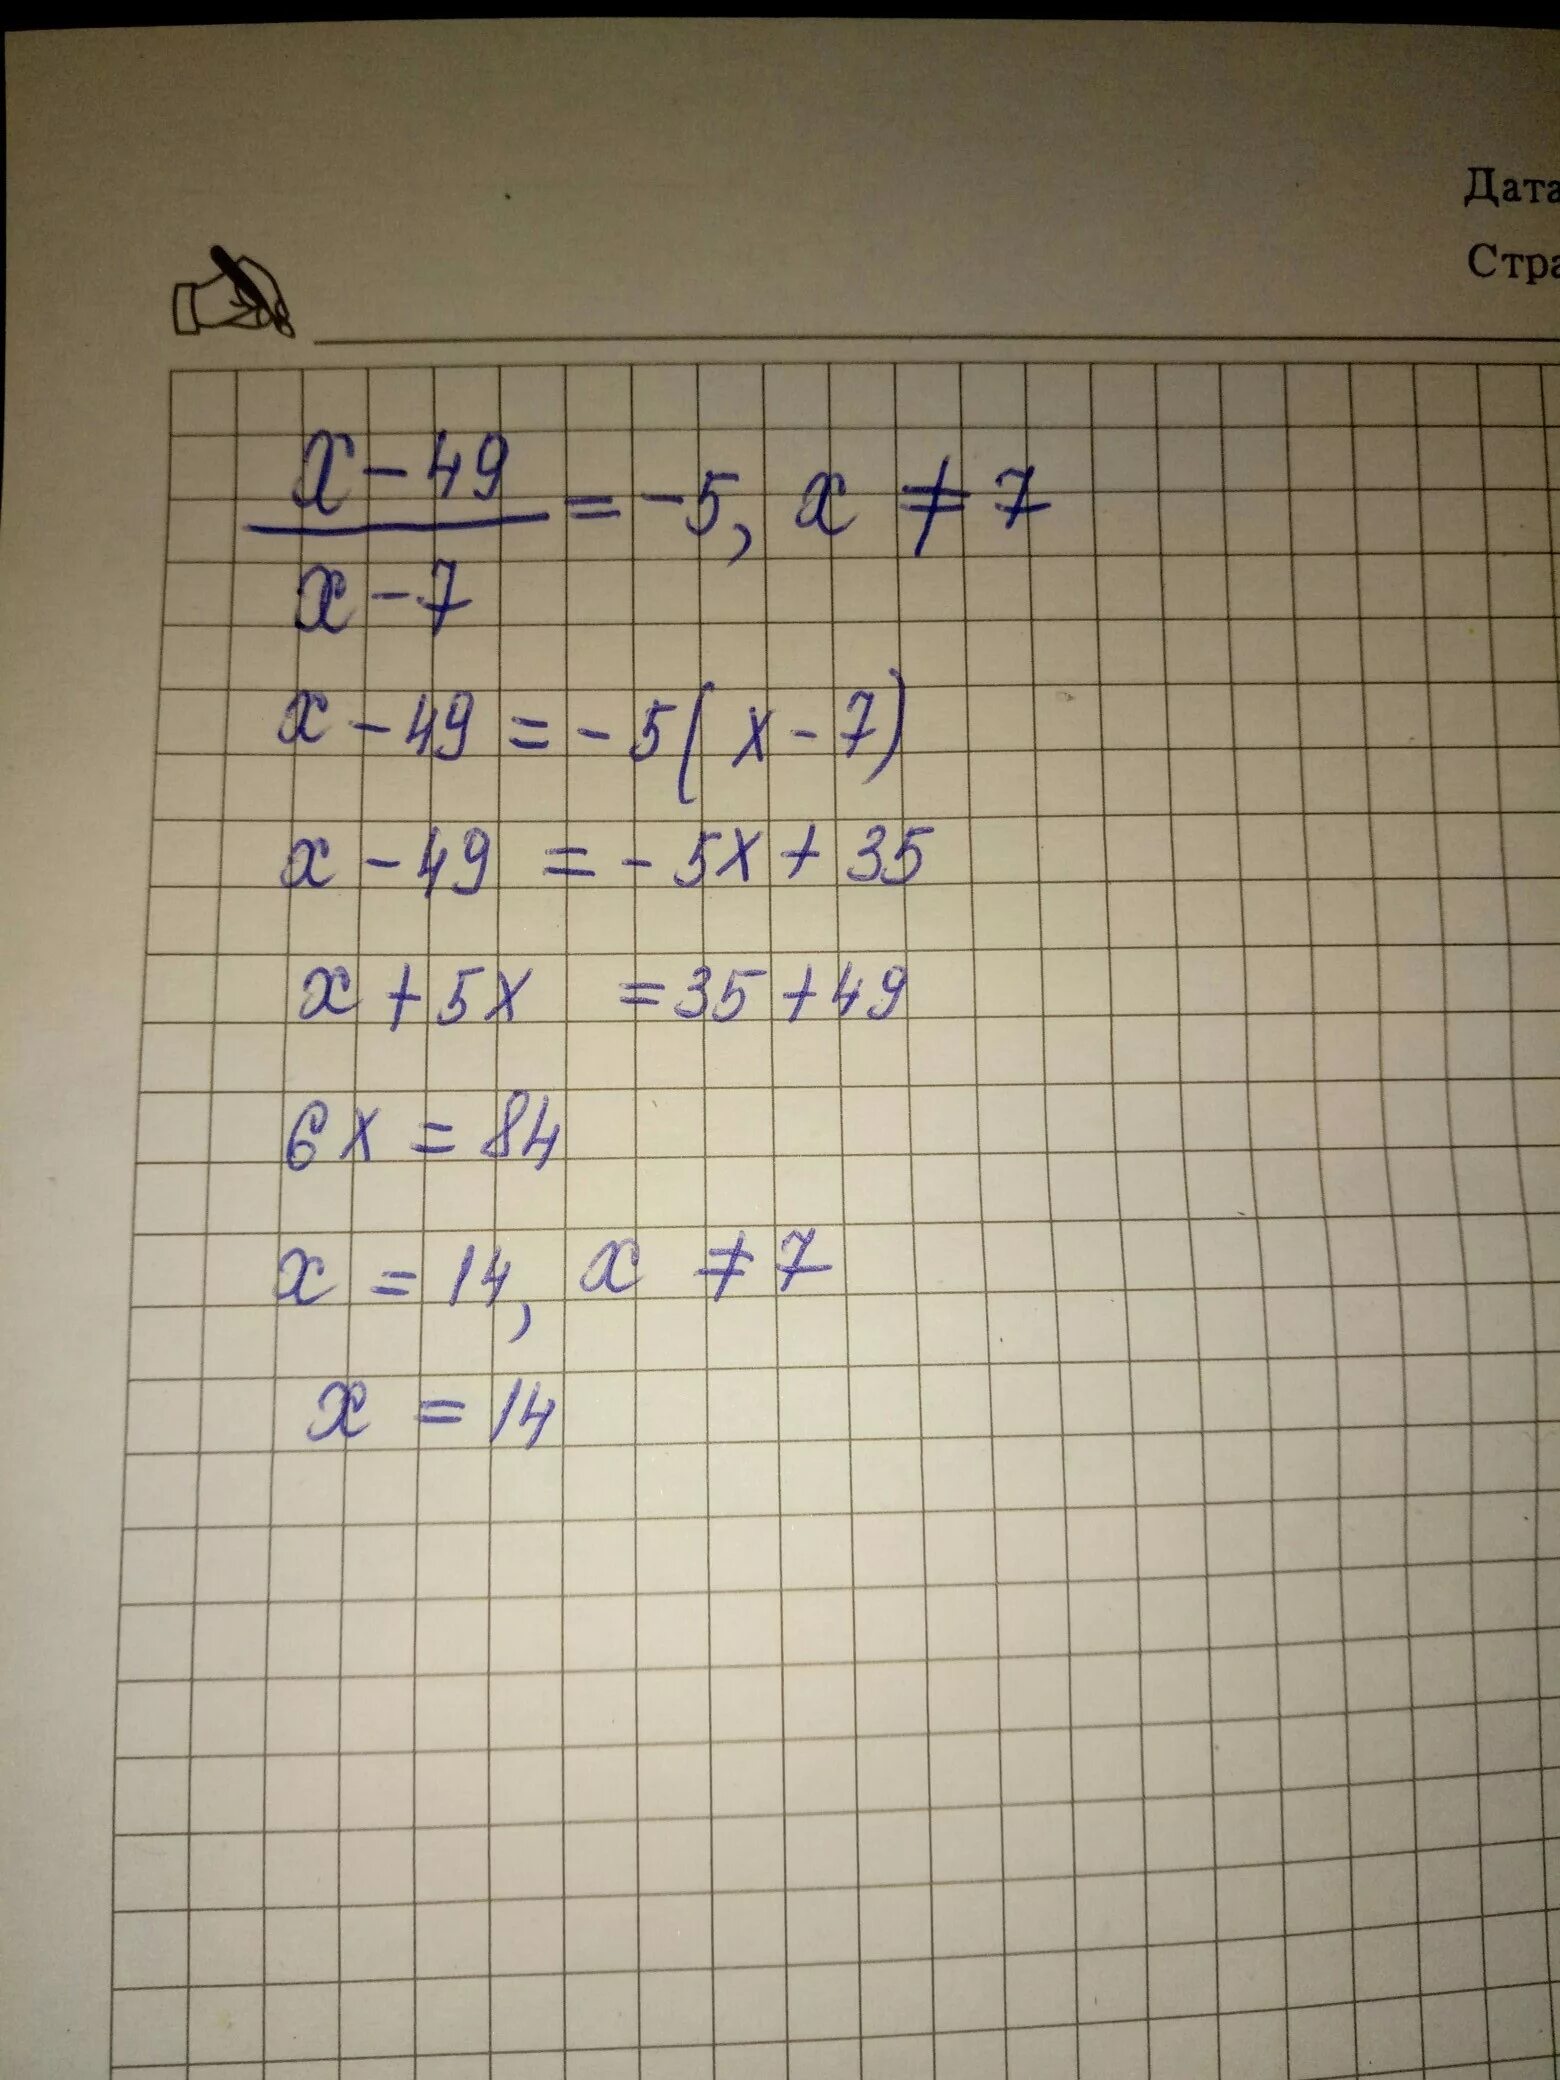 7x 14 x 1 0. 7x=49. Х7÷х5 ответы. 7^(5+X)=49^X. 7 X 7 = 49.